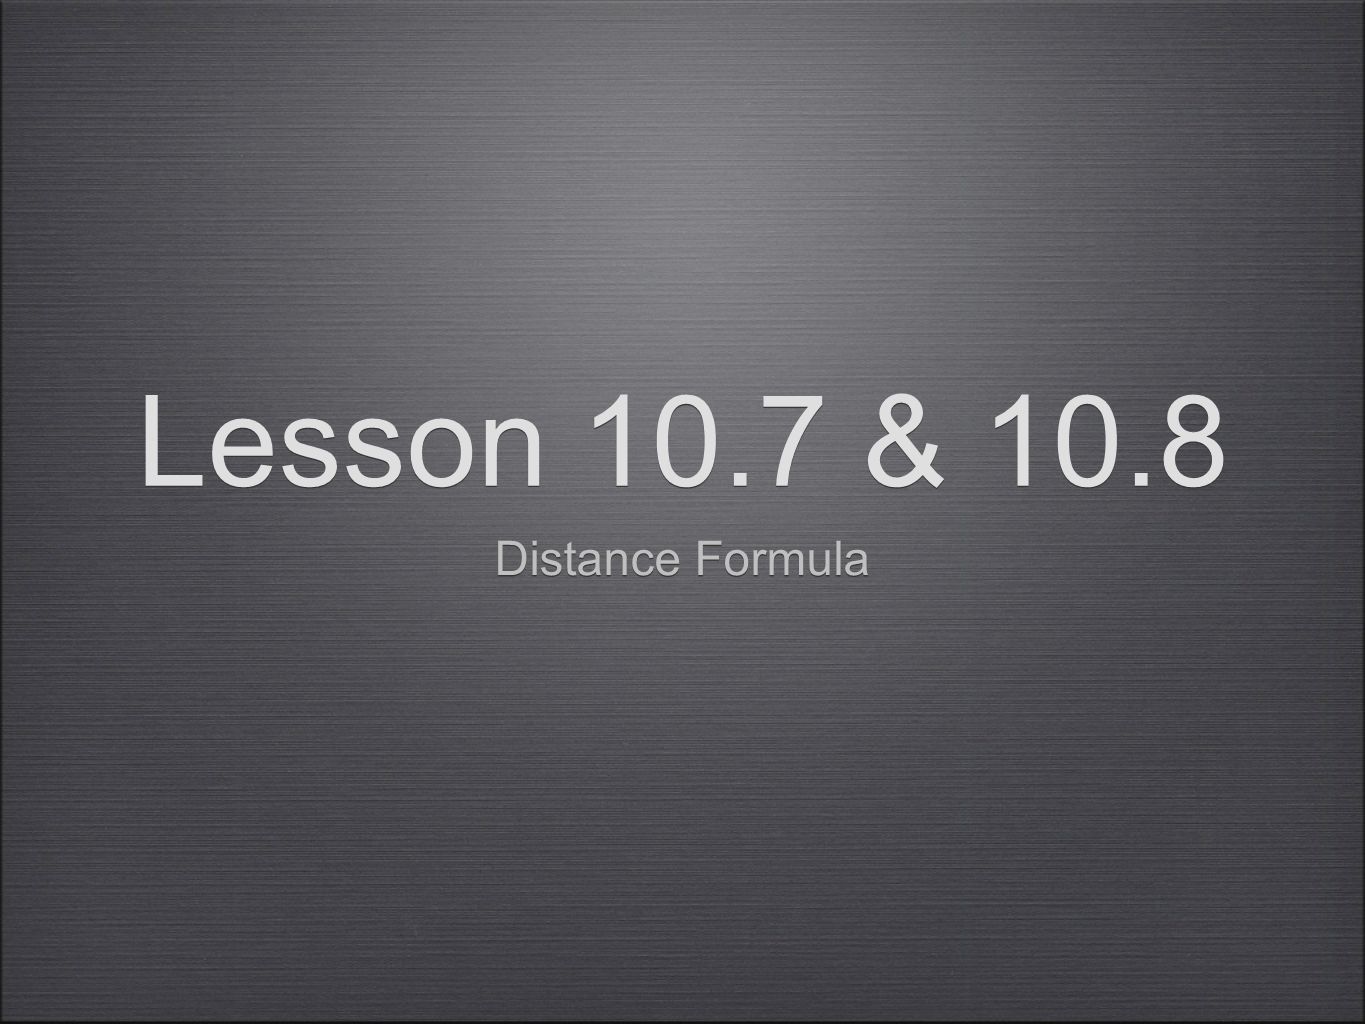 Lesson 10.7 & 10.8 Distance Formula